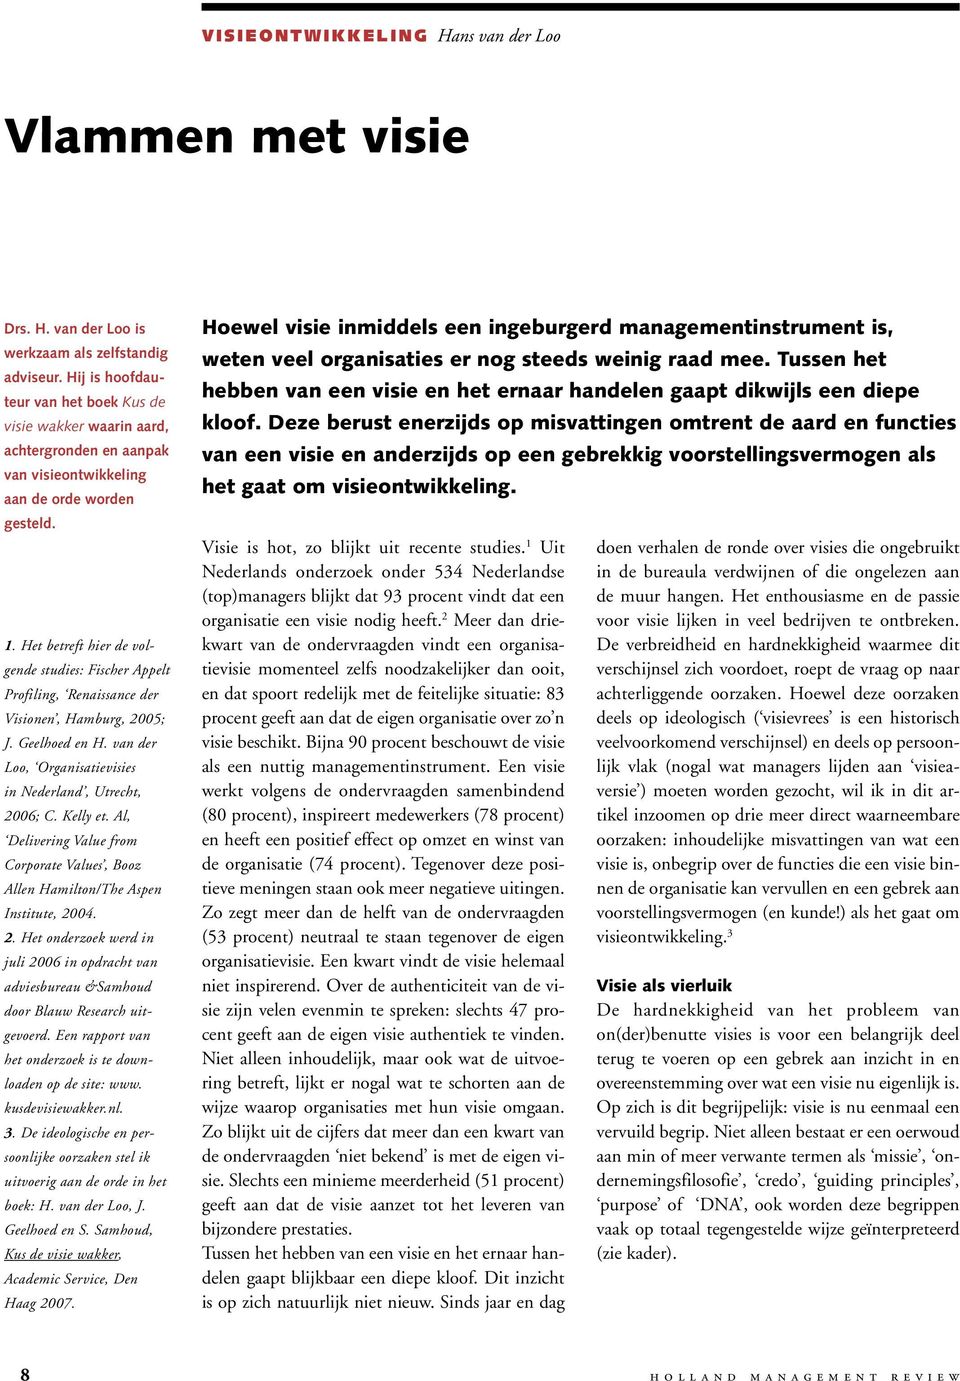 Het betreft hier de volgende studies: Fischer Appelt Profiling, Renaissance der Visionen, Hamburg, 2005; J. Geelhoed en H. van der Loo, Organisatievisies in Nederland, Utrecht, 2006; C. Kelly et.